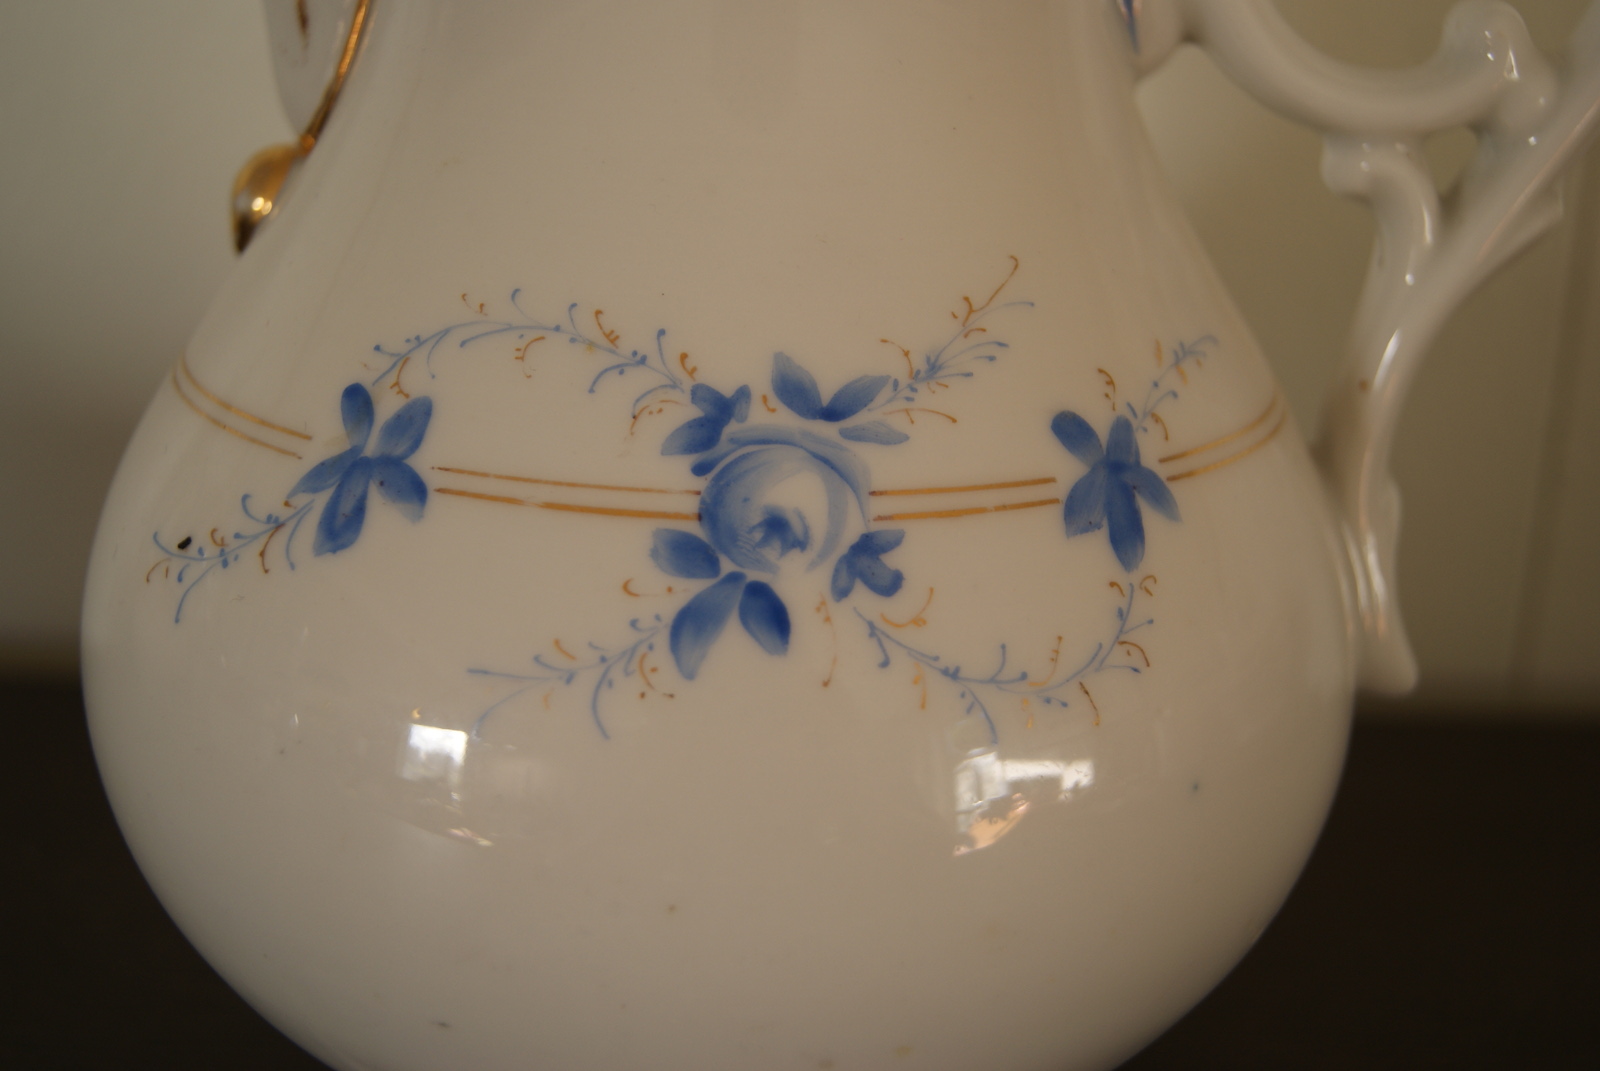 Jaworzyna Slaska (Konigszelt) August Rappsilber  biedermaier pot with blue flowers